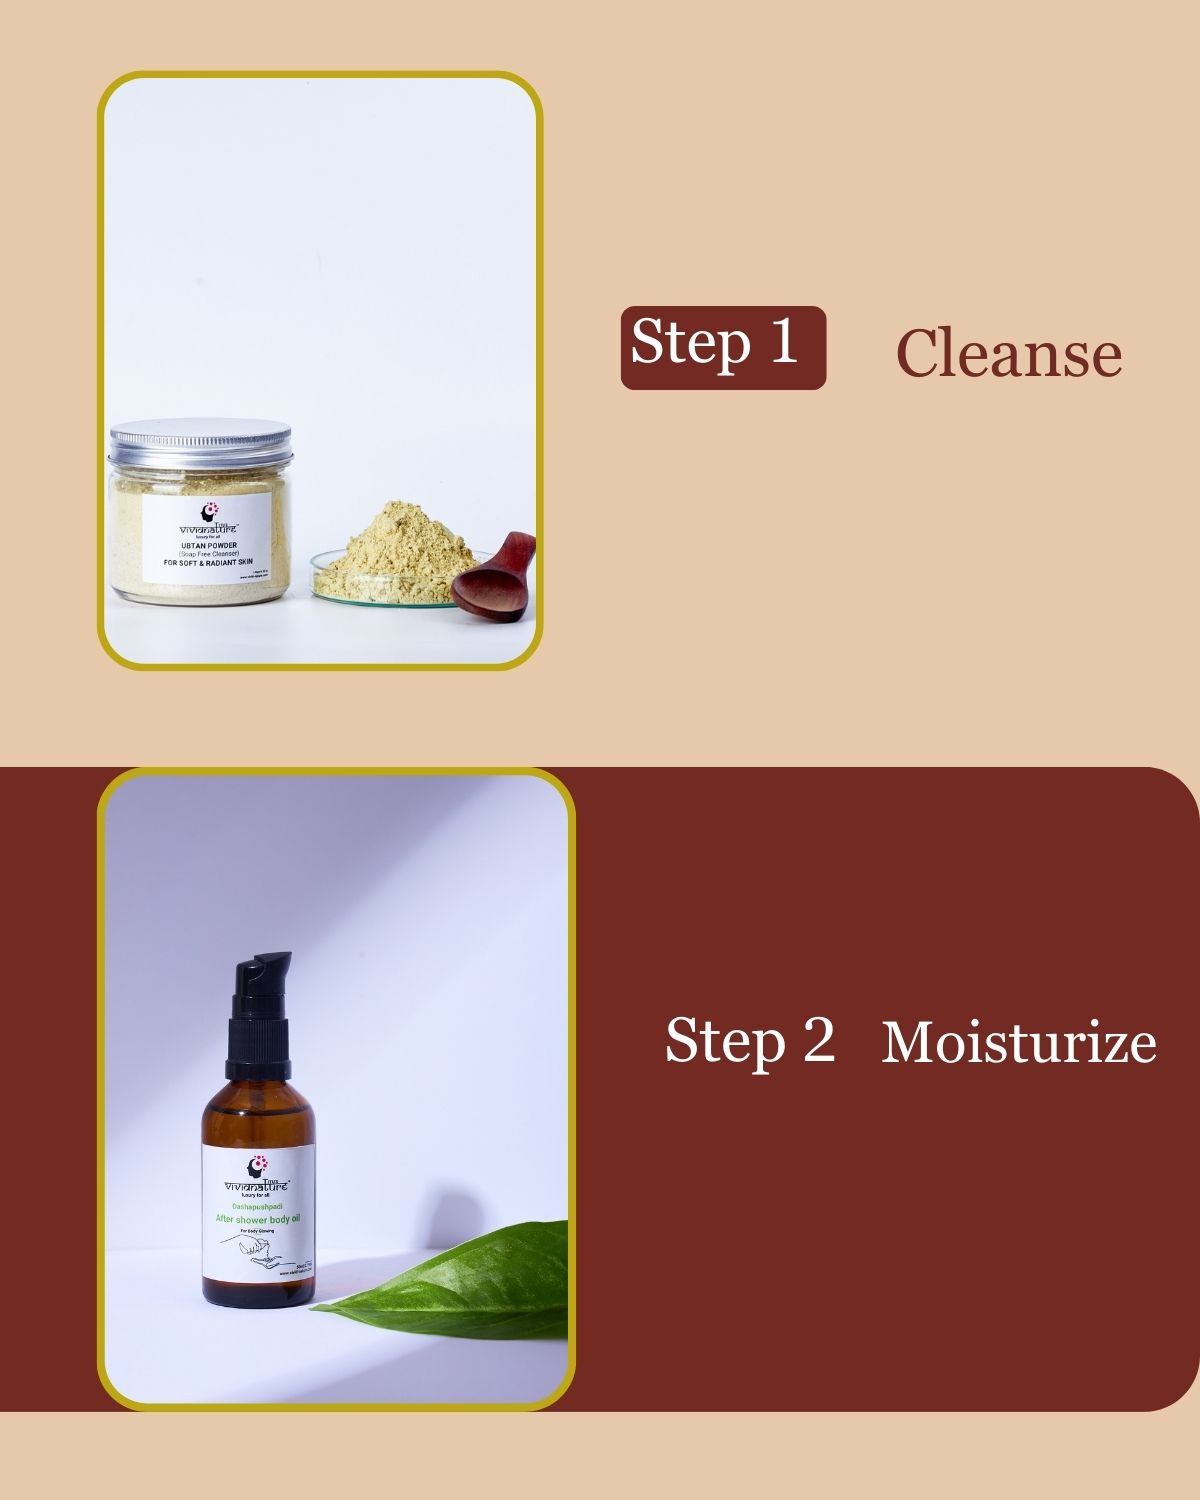 After Shower Body Oil for Dry Skin | Nourishing Body Oil